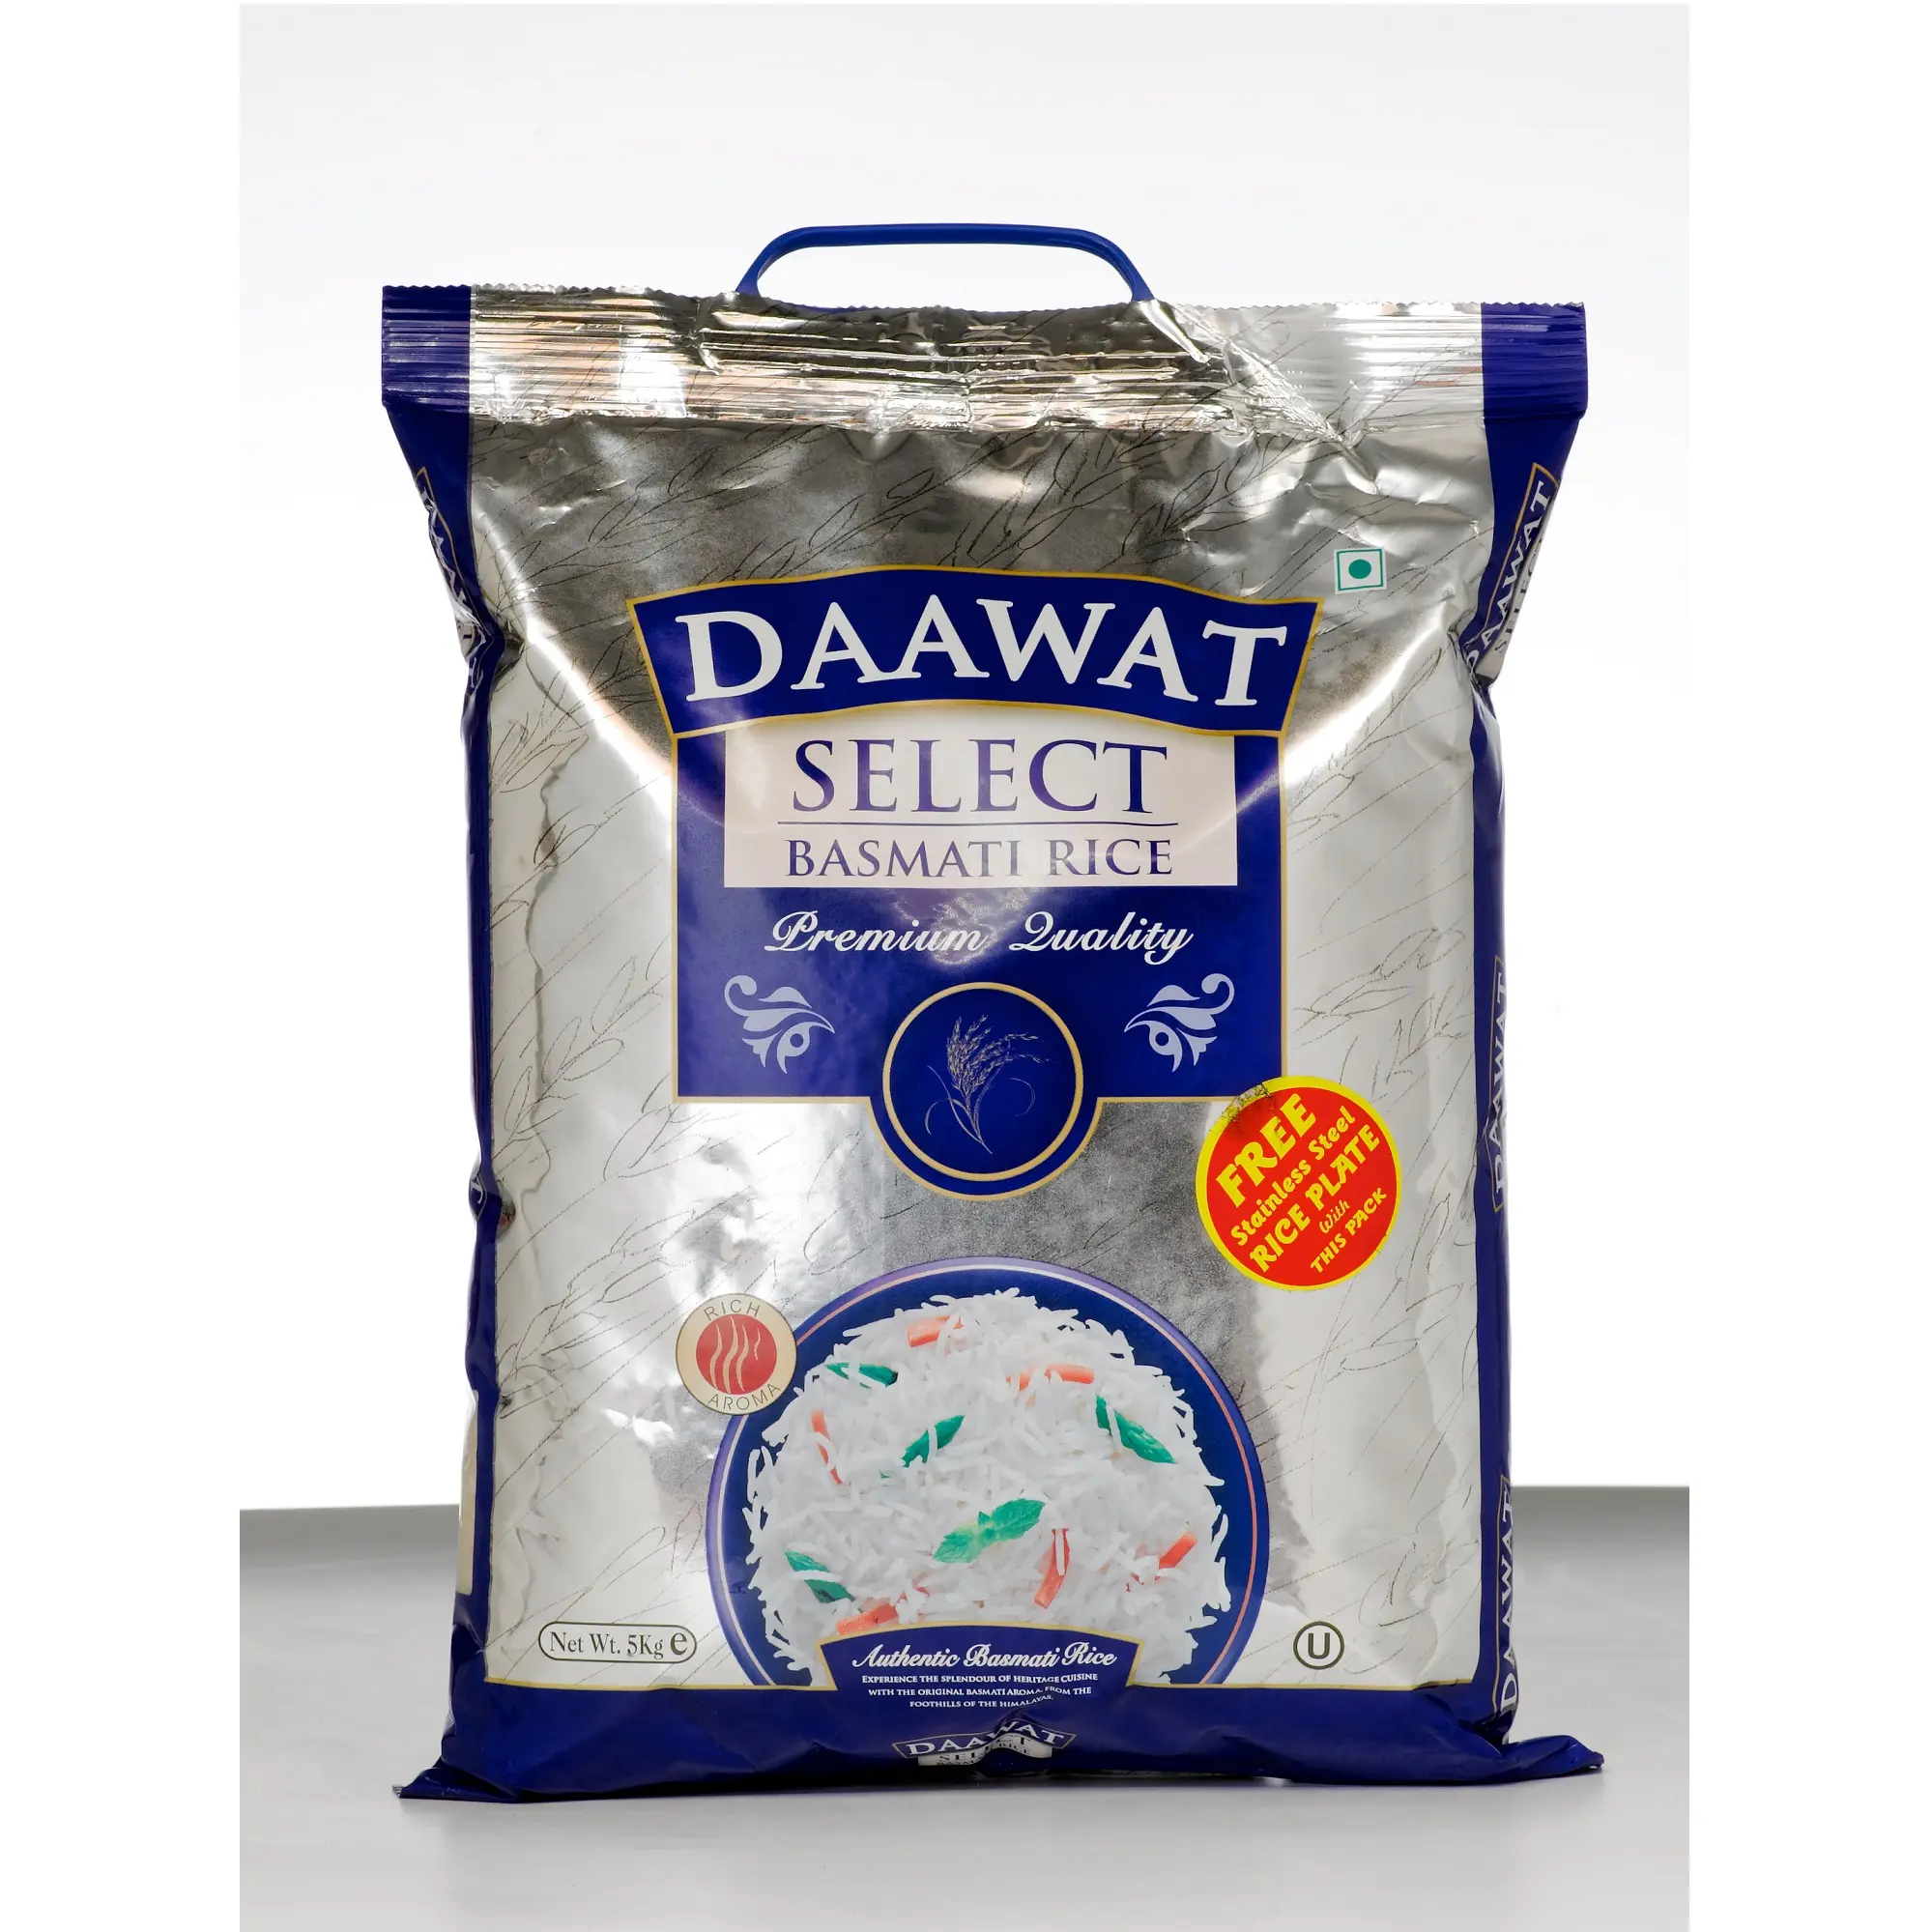 الهند الأرز الحبوب طويلة DAAWAT أرز بسمتي 5 كجم مع الصلاحية 24 شهرا من Dashmesh